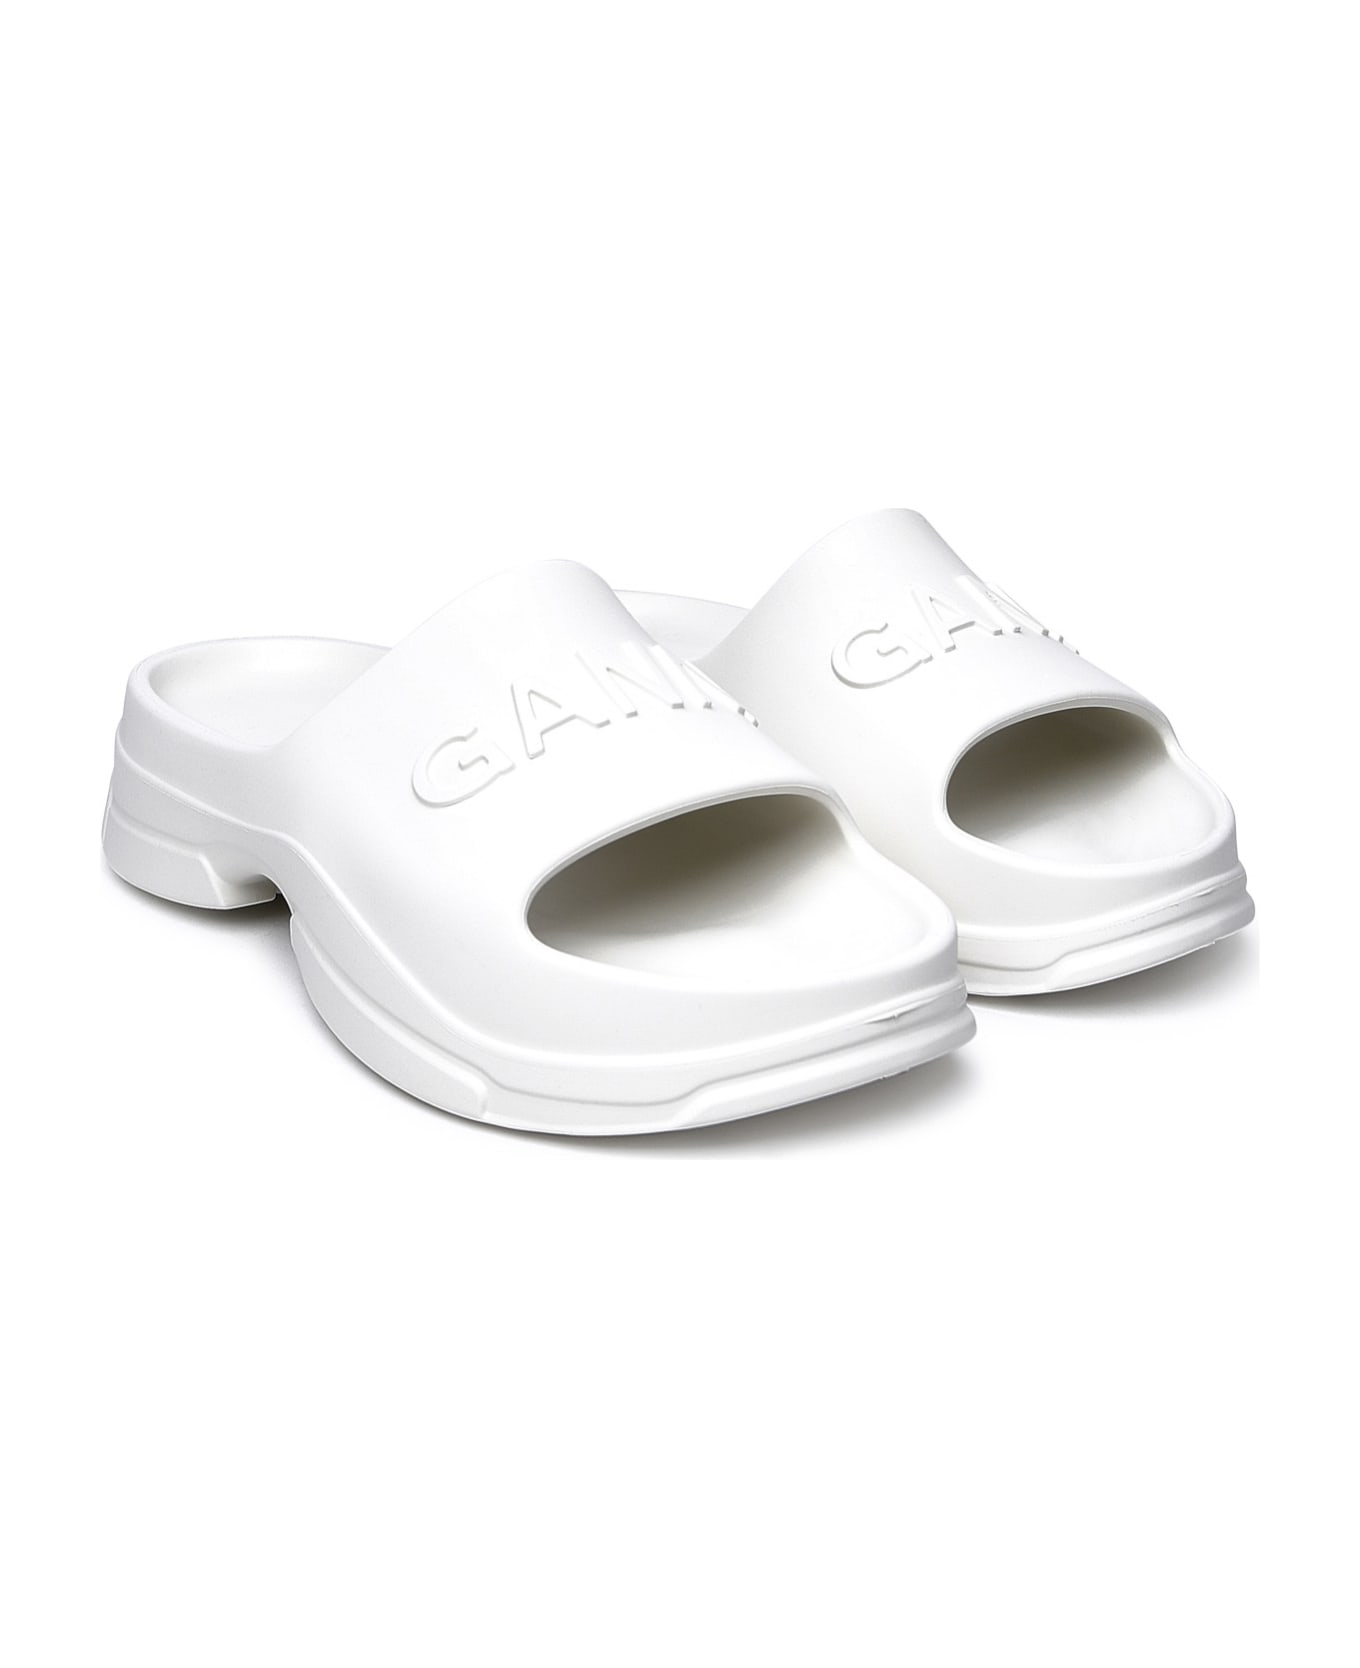 Ganni White Rubber Slippers - White